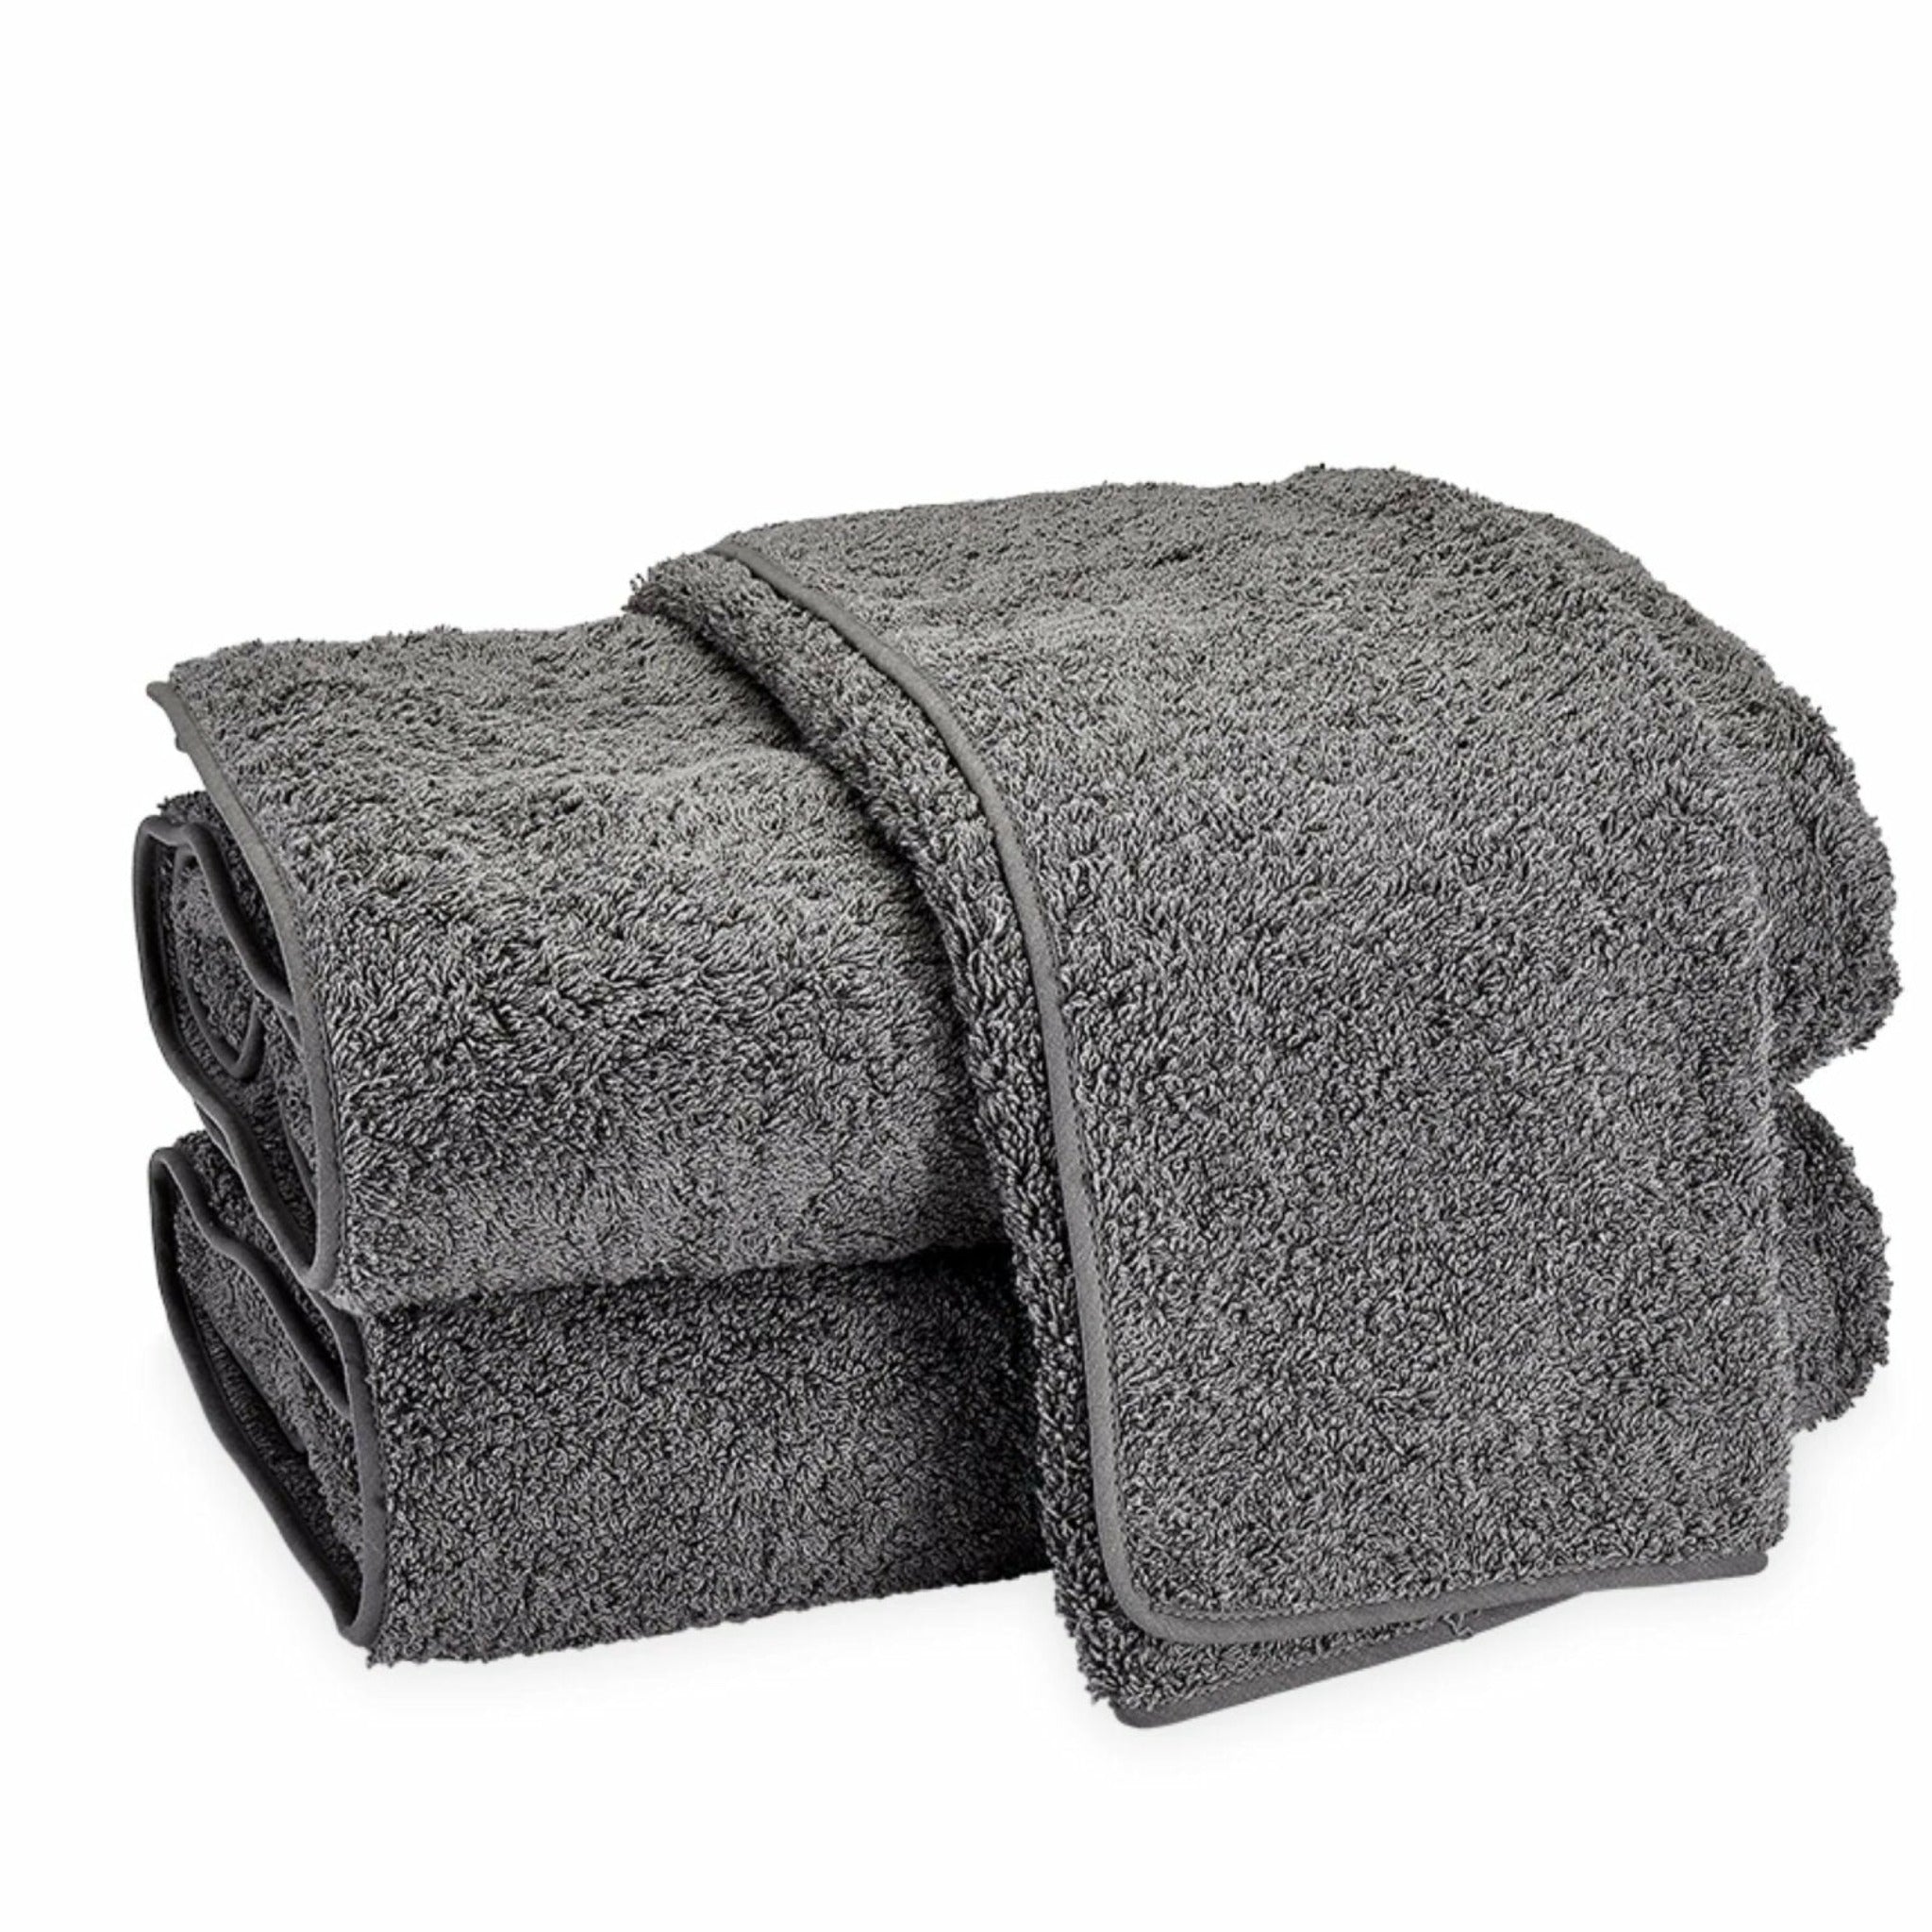 SR-HOME 100% Cotton Bath Towels